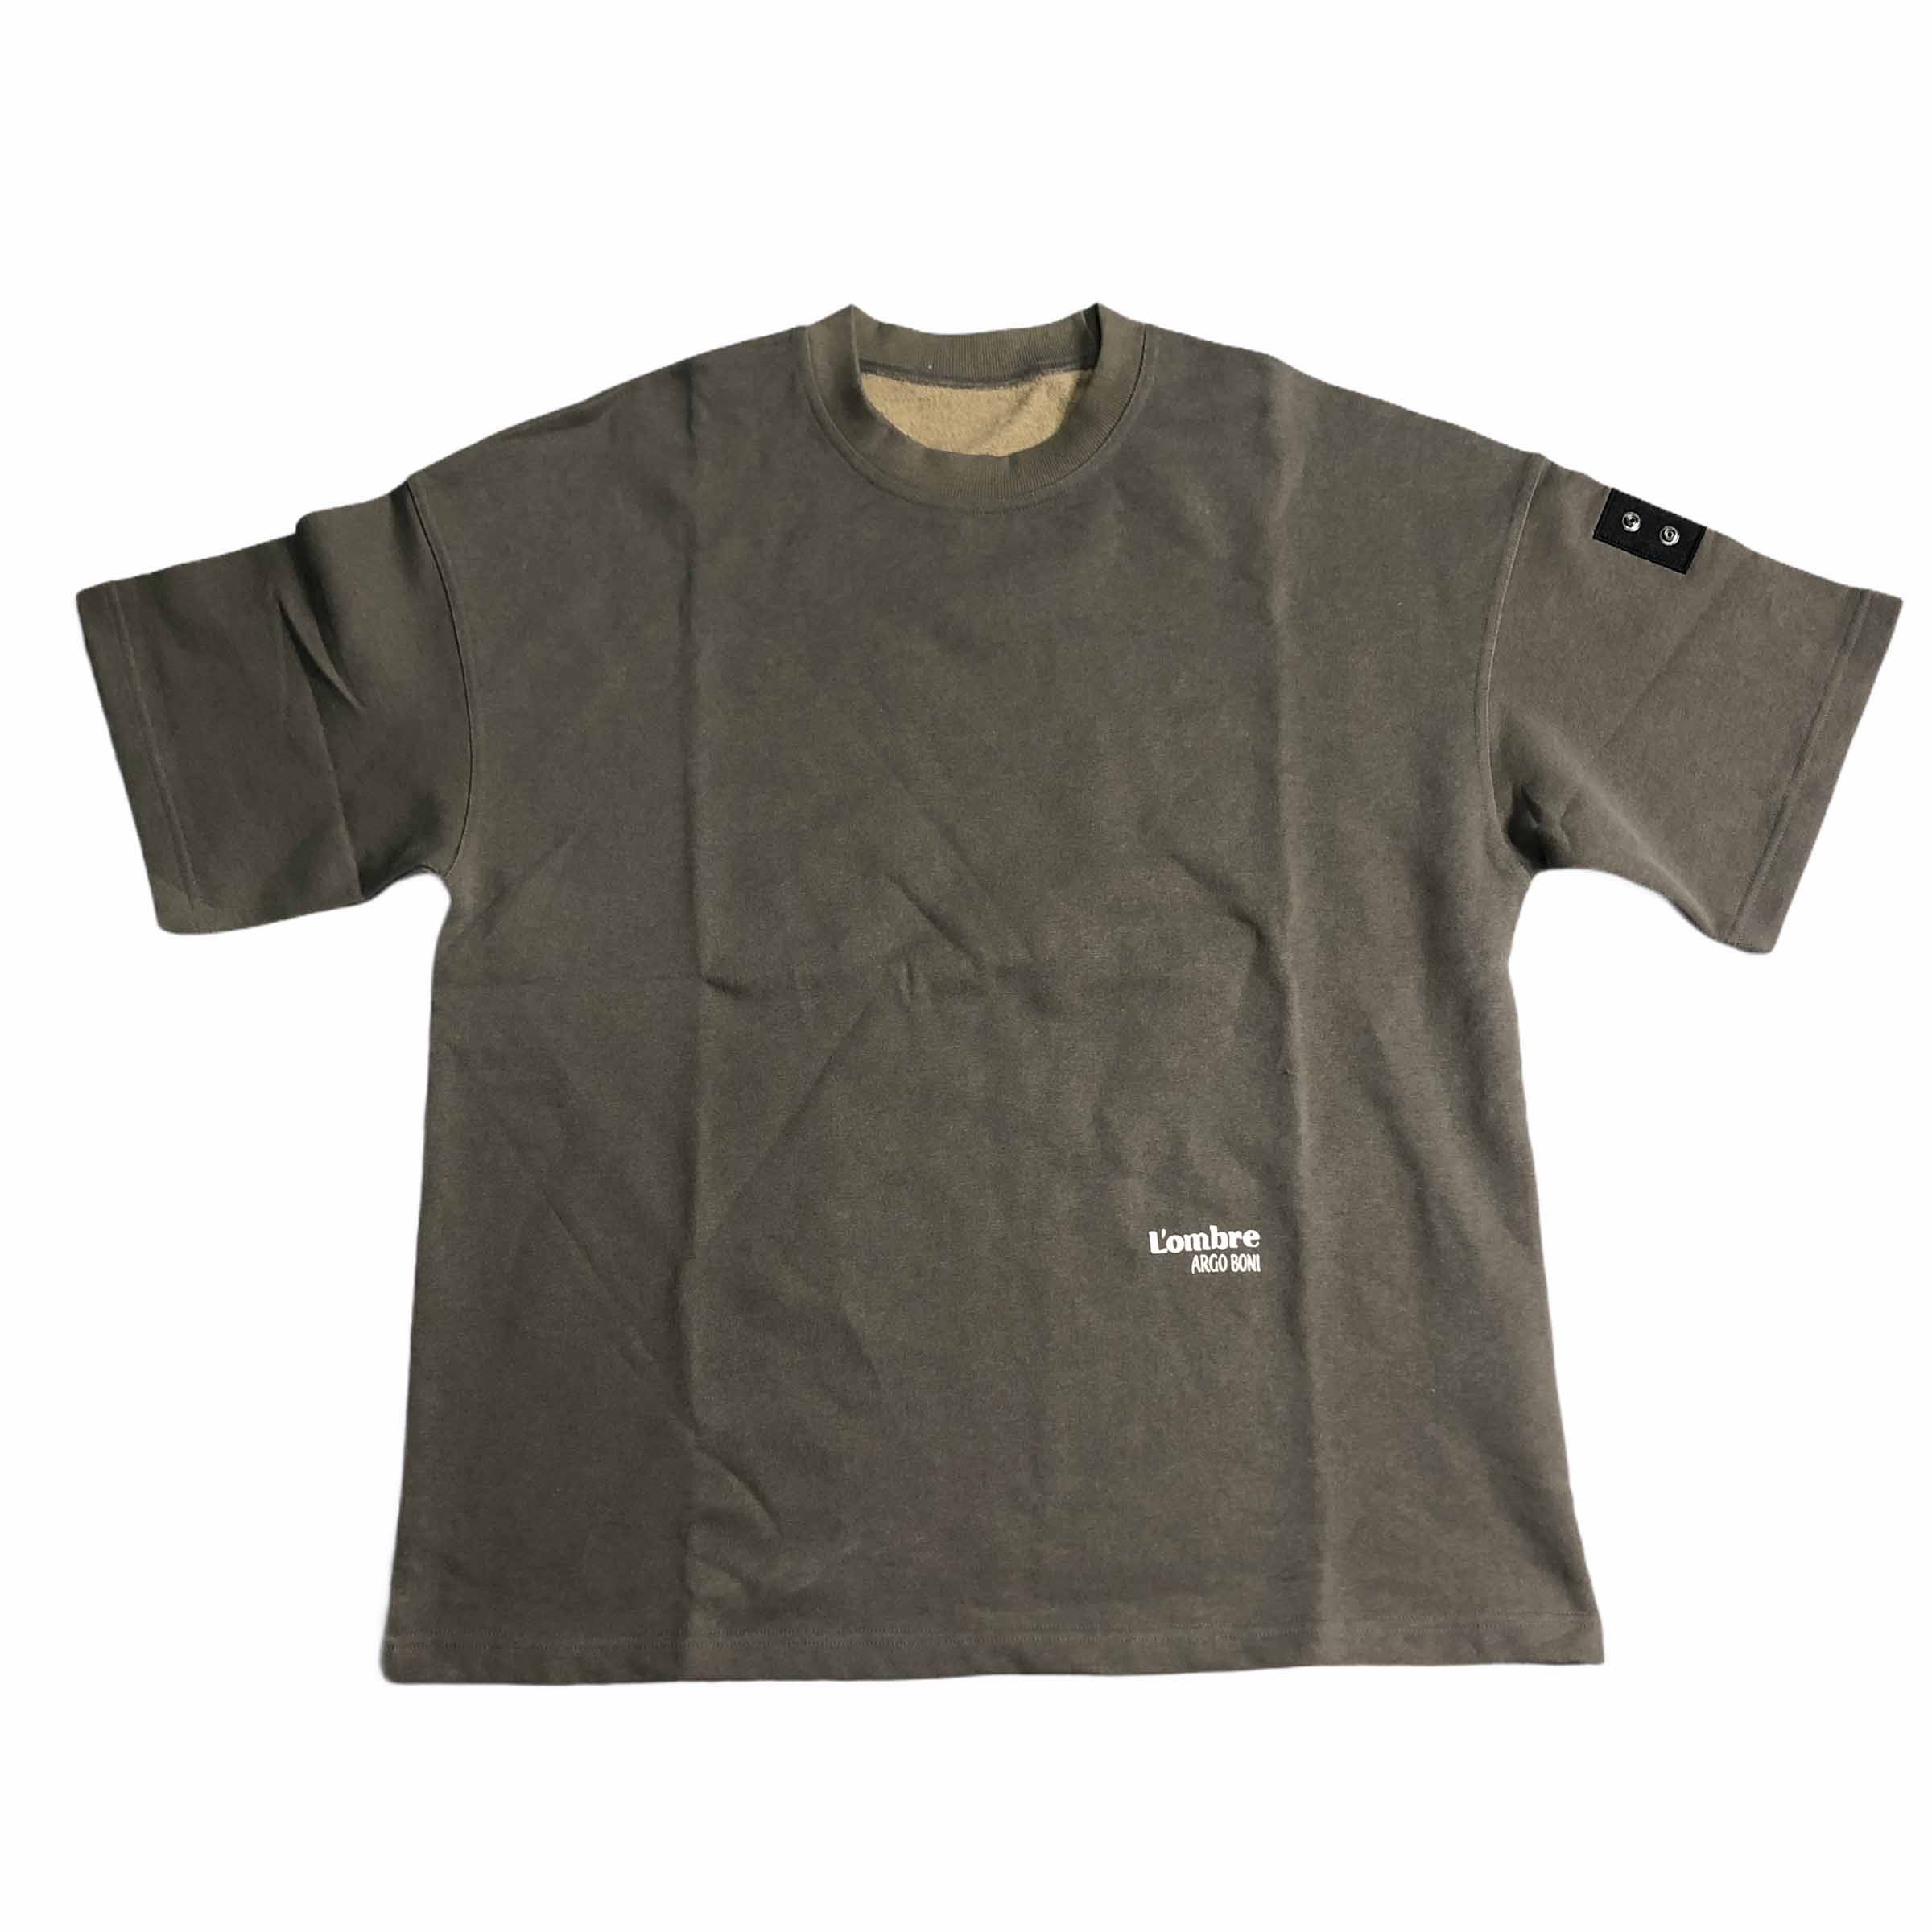 [Argo Boni] Lombre Basic Short Sleeve Khaki - Size 2